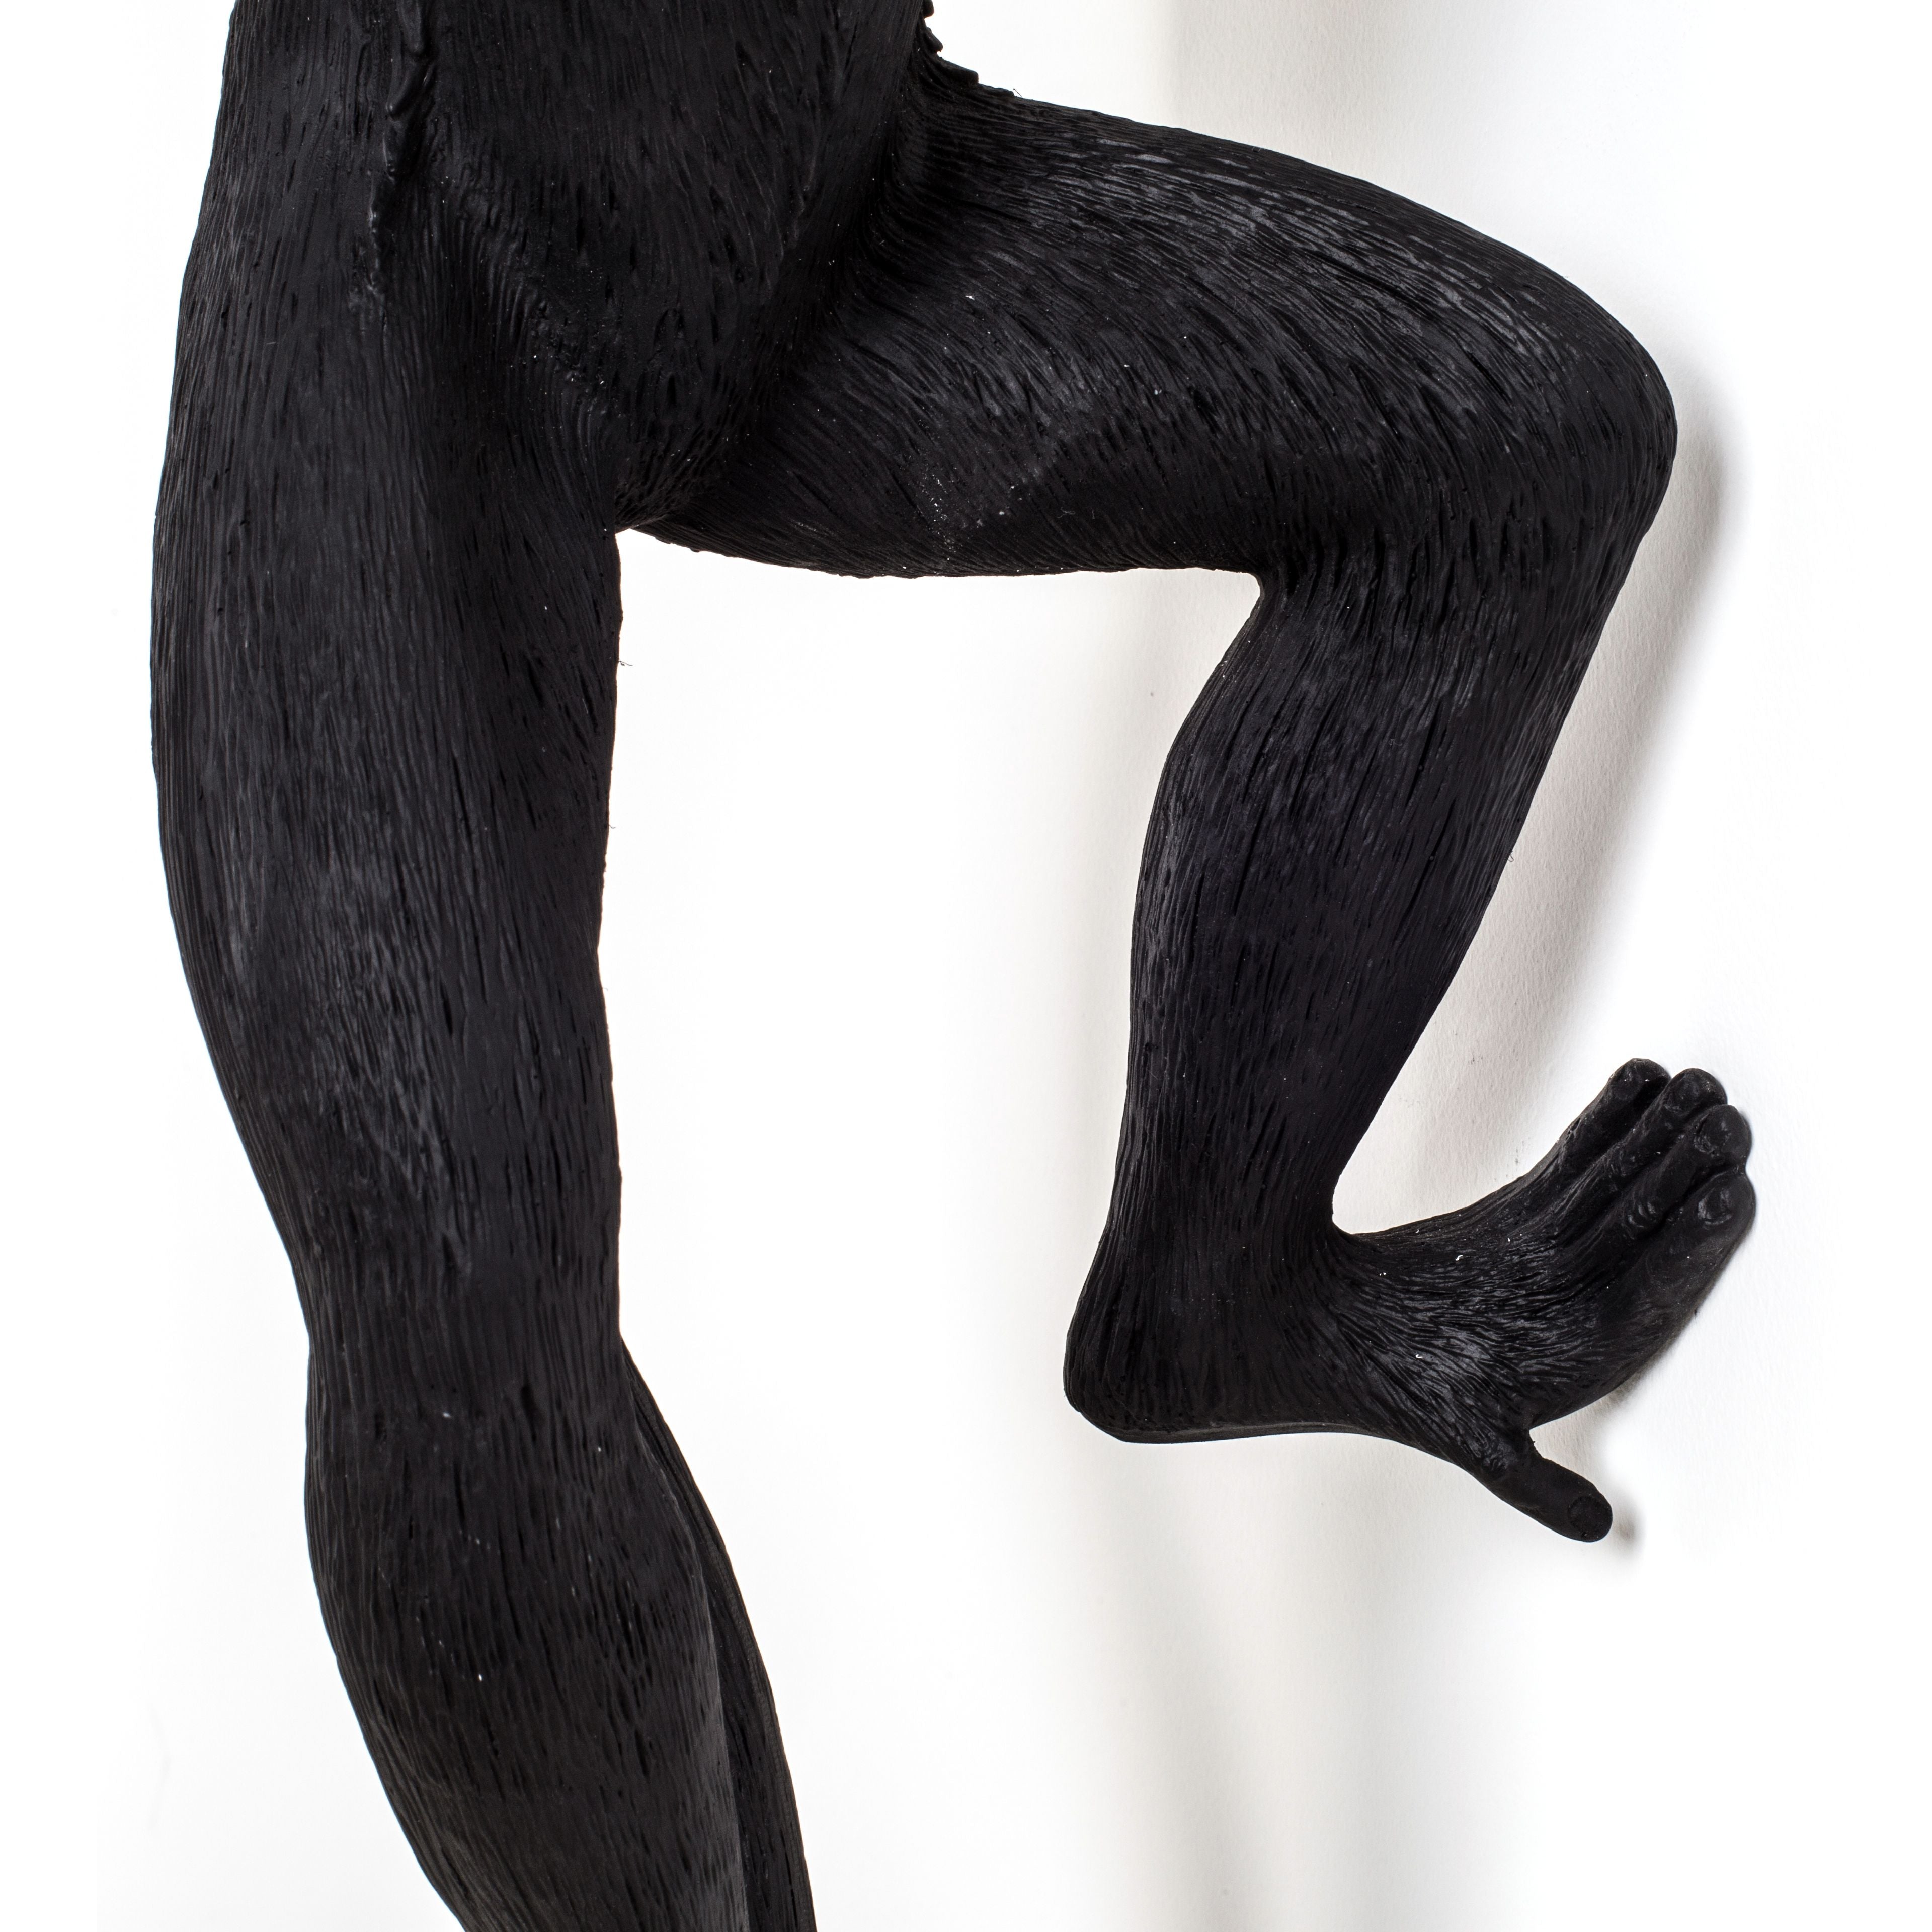 Seletti Monkey utomhuslampa svart, hängande vänster hand